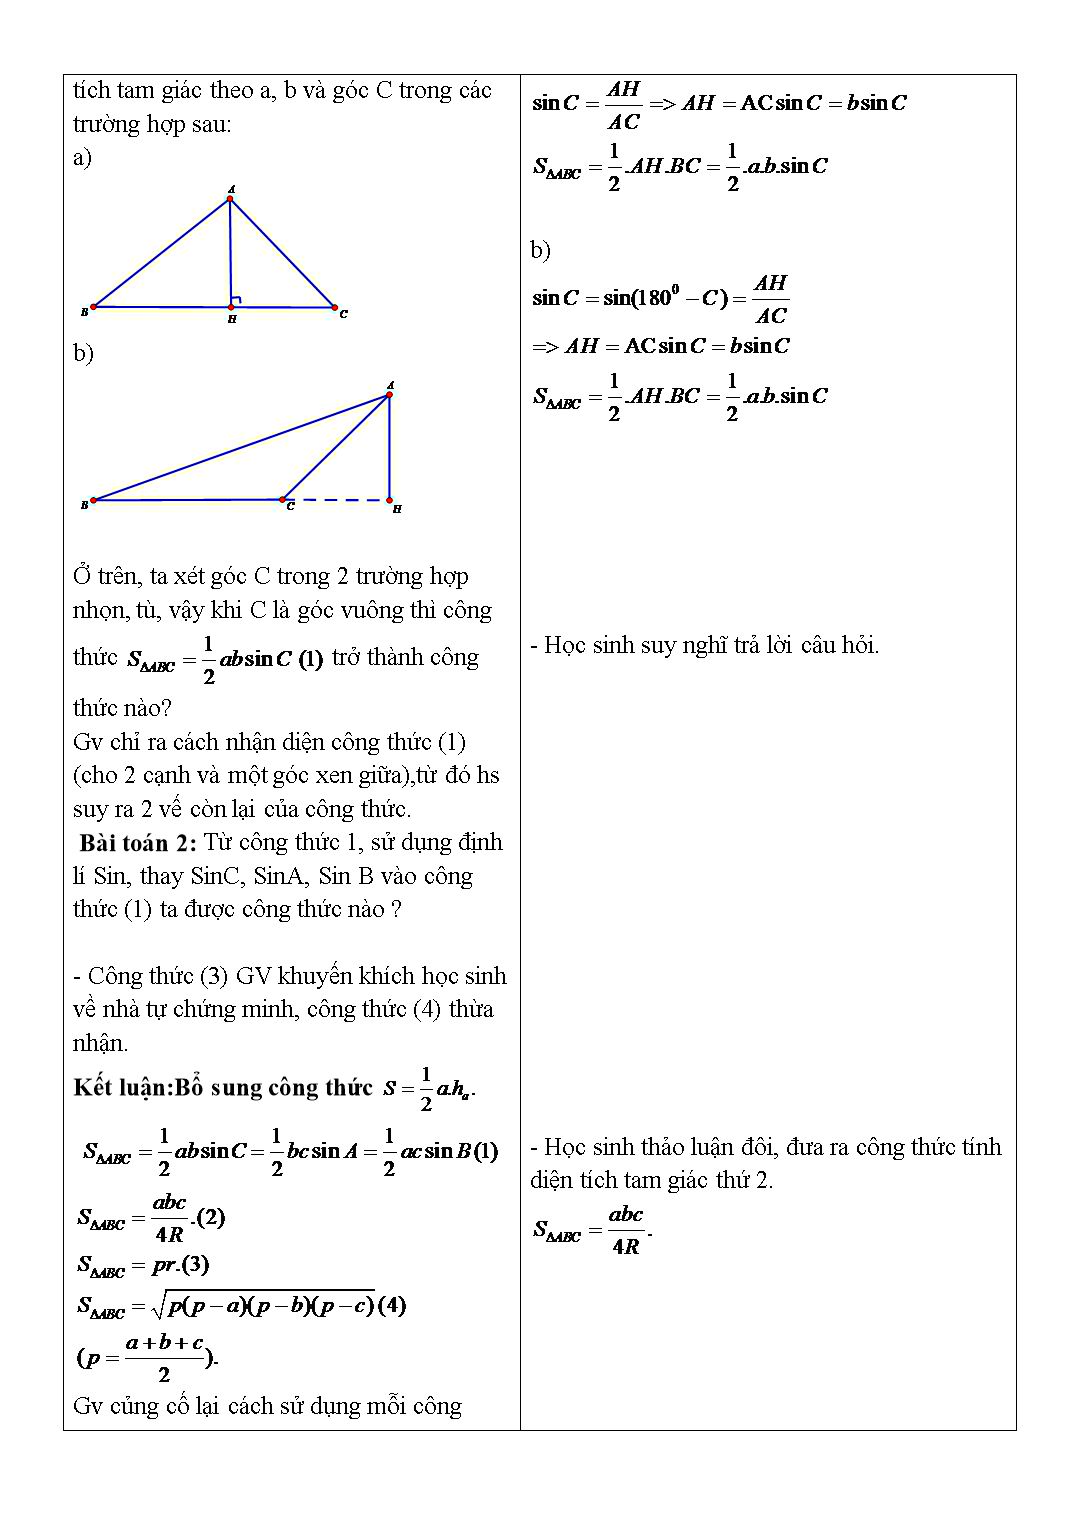 Giáo án môn Toán Lớp 10 (Theo phương pháp mới) - Chủ đề: Các hệ thức lượng trong tam giác và giải tam giác trang 2